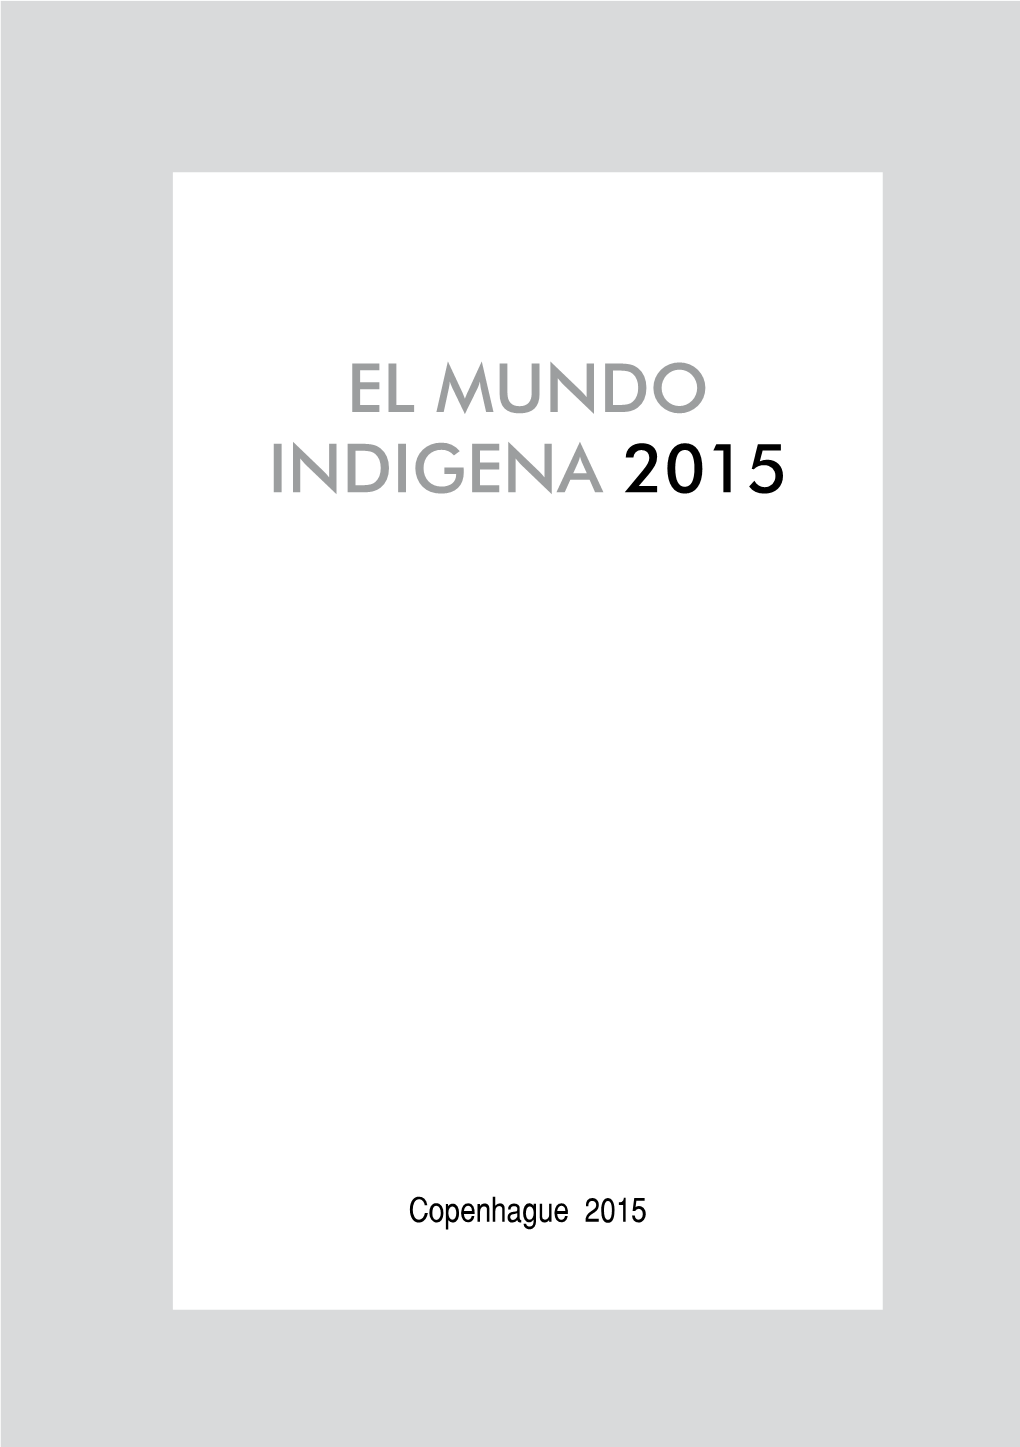 El Mundo Indigena 2015